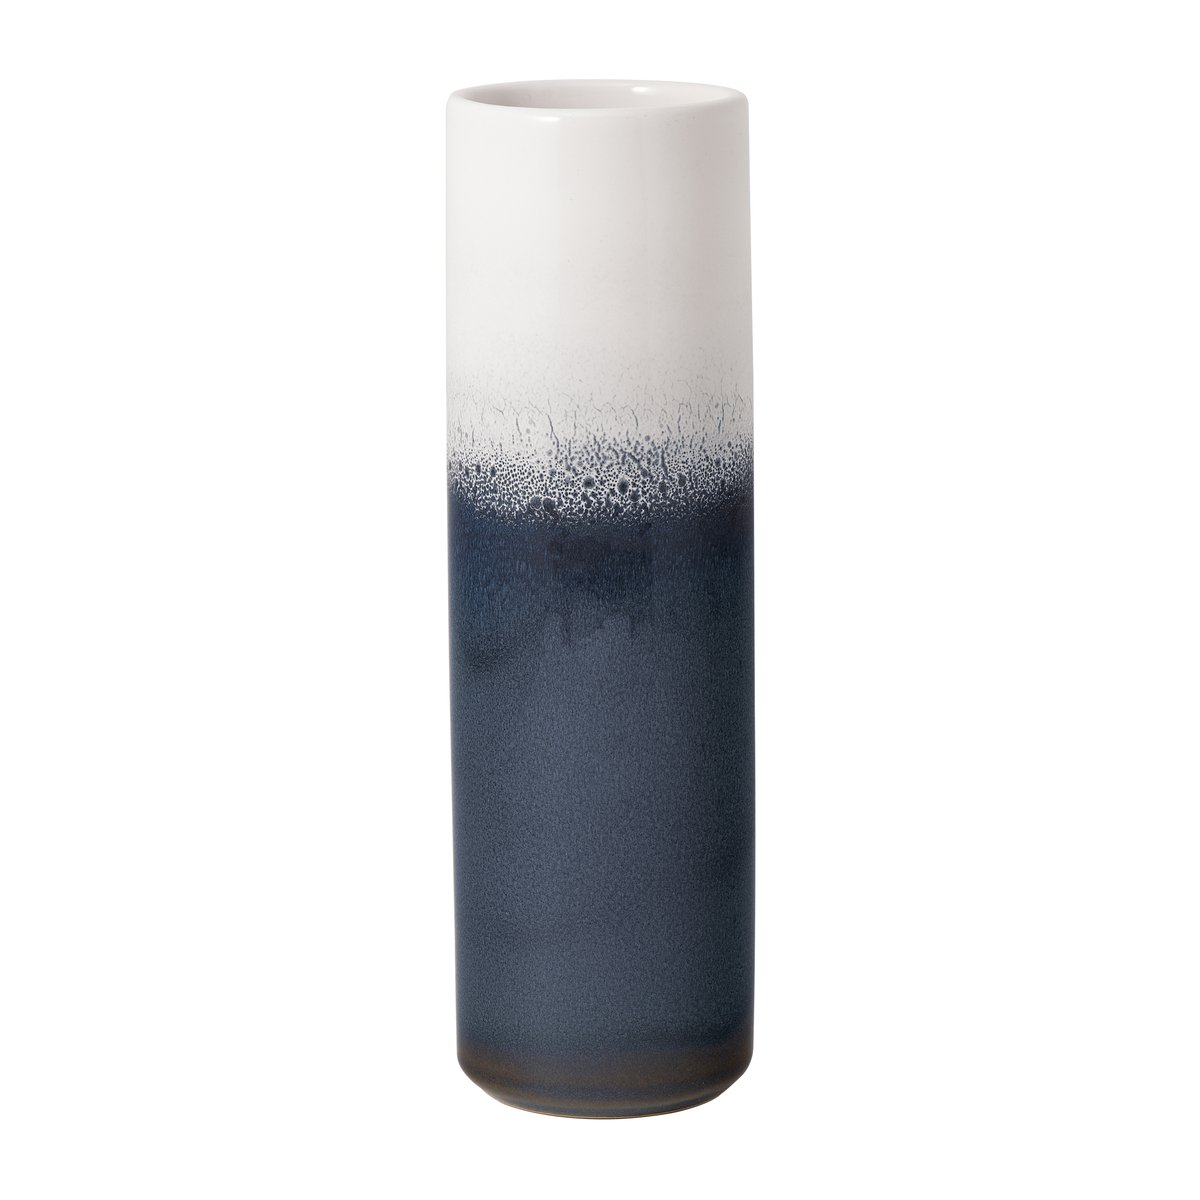 Bilde av Villeroy & Boch Lave Home sylinder vase 25 cm Blå-hvit